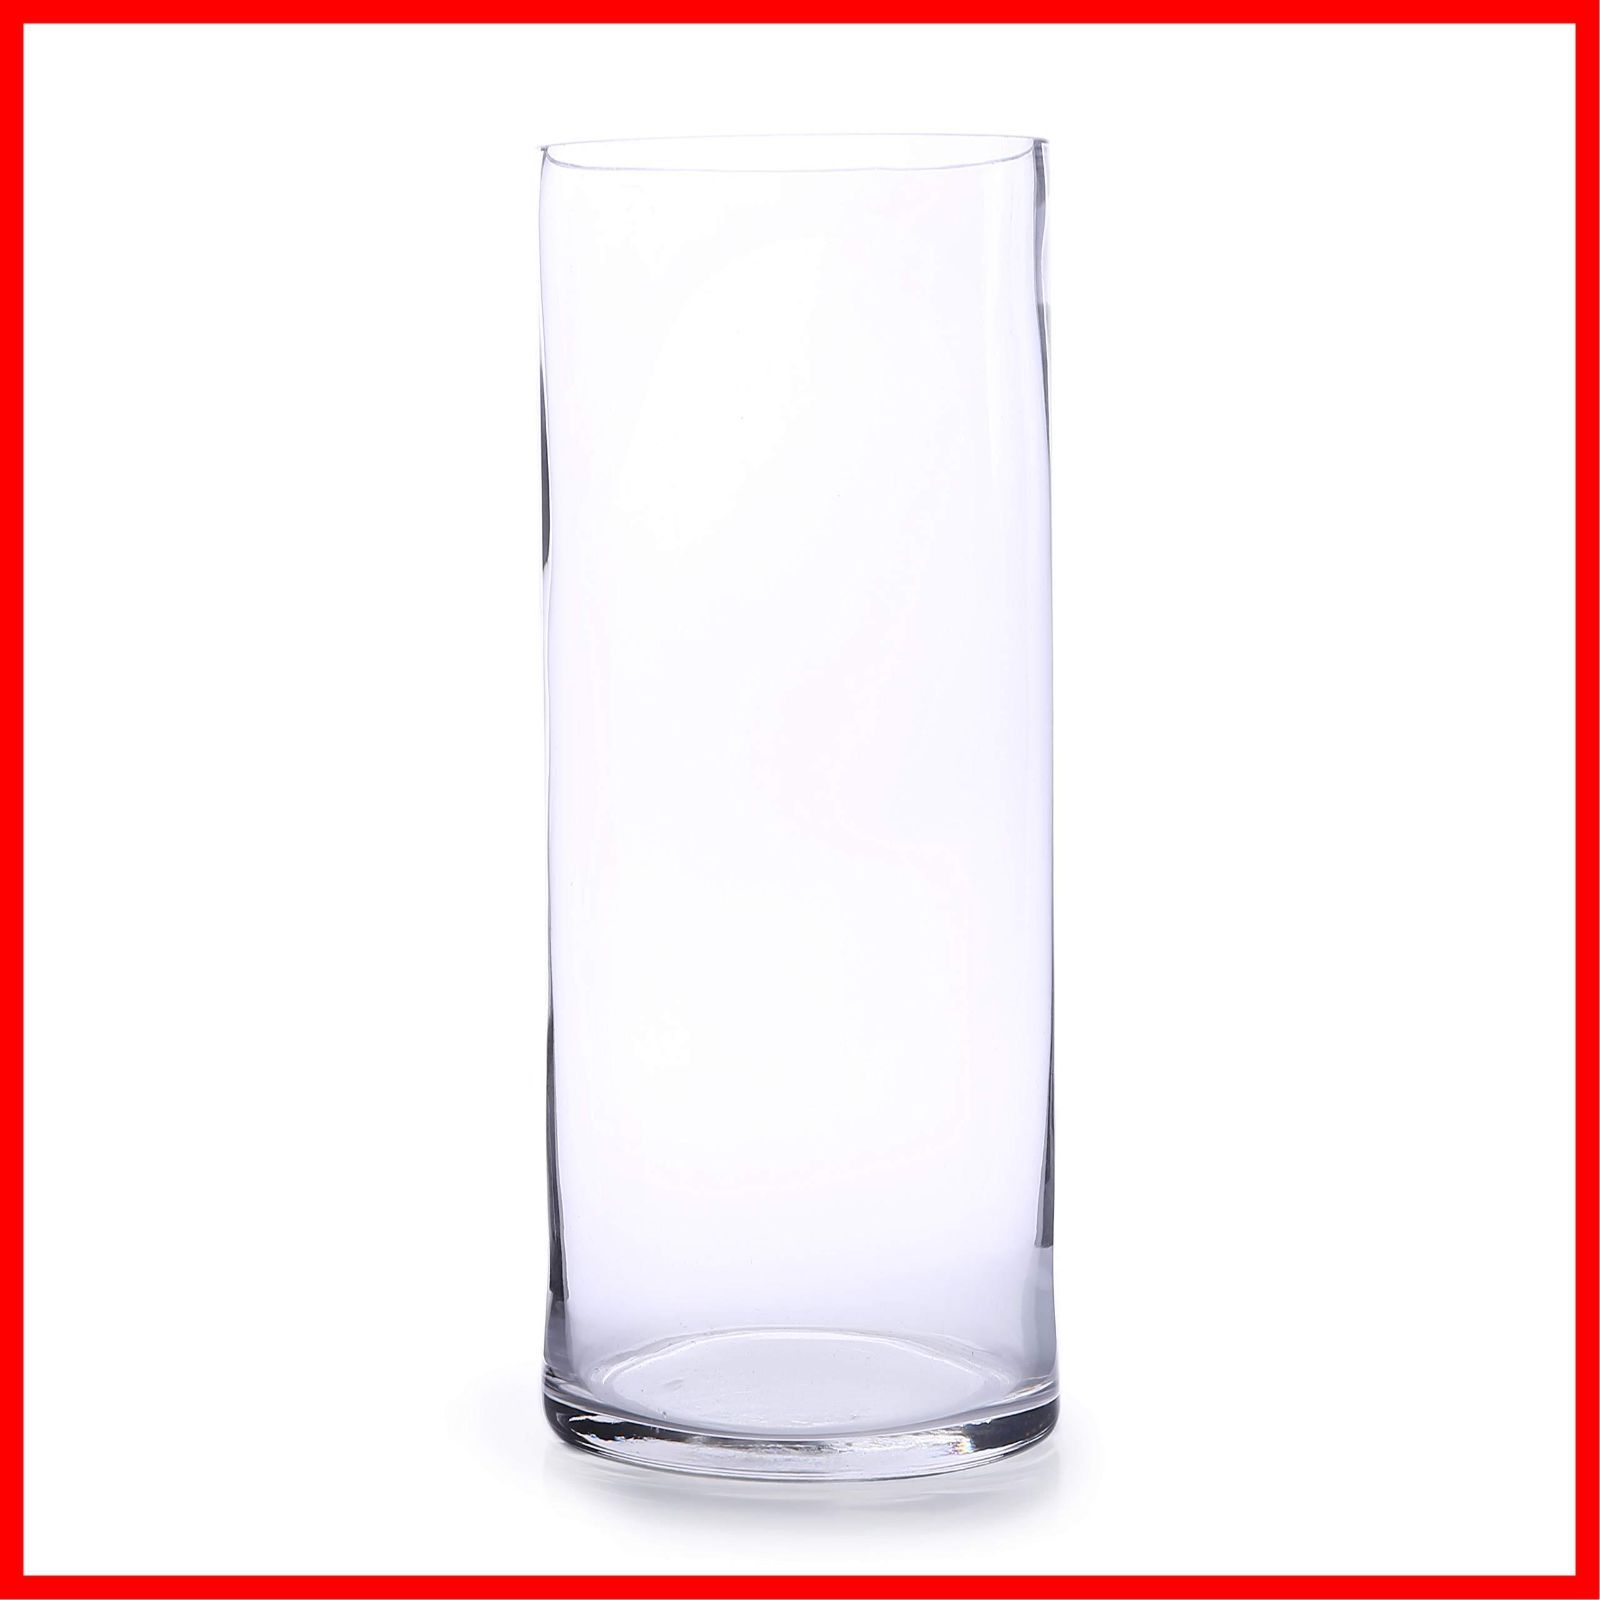 数量限定】シリンダー 花器 円柱 フラワーベース ガラス花瓶 vase 大 透明 30cm 大きい おしゃれ ガラス 花瓶 (12×30)  [スプレンノ] - メルカリ